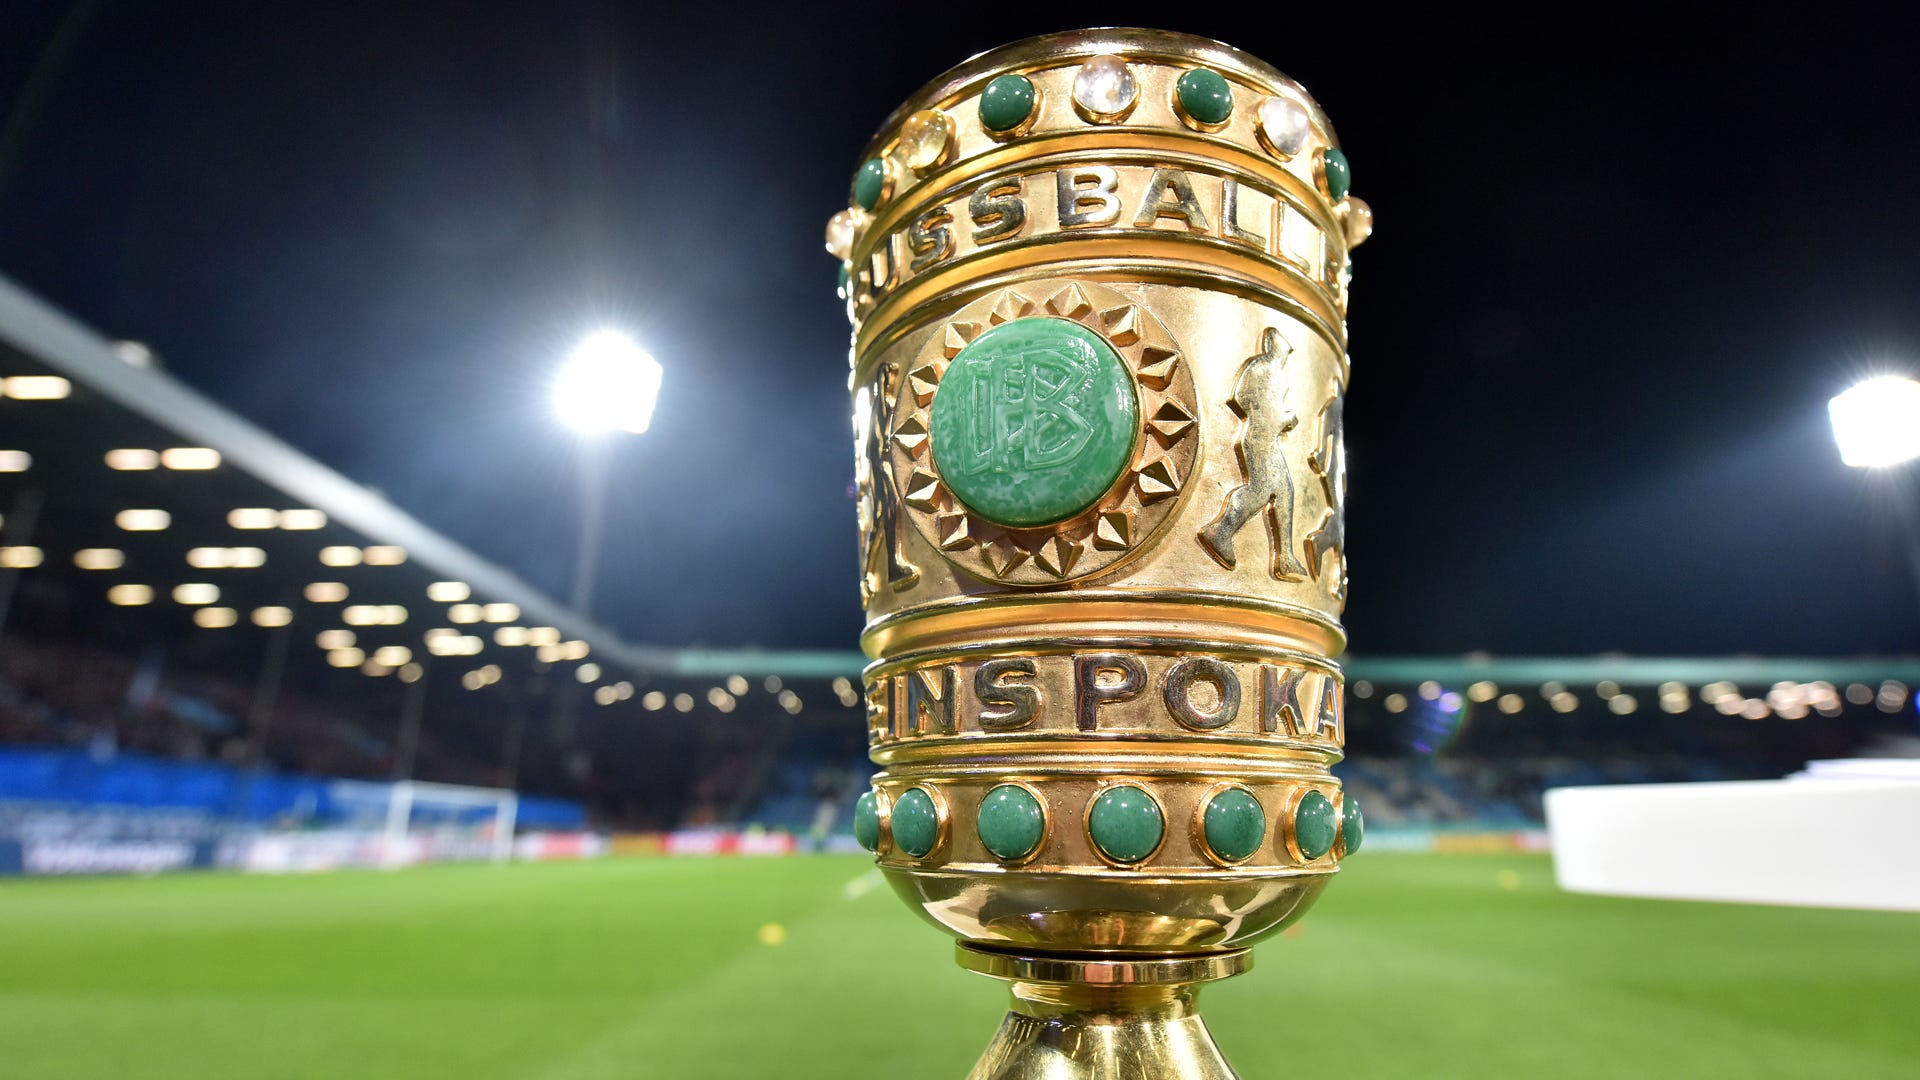 DFB-Pokal heute live im Free-TV So werden die Spiele gezeigt / übertragen Goal Deutschland